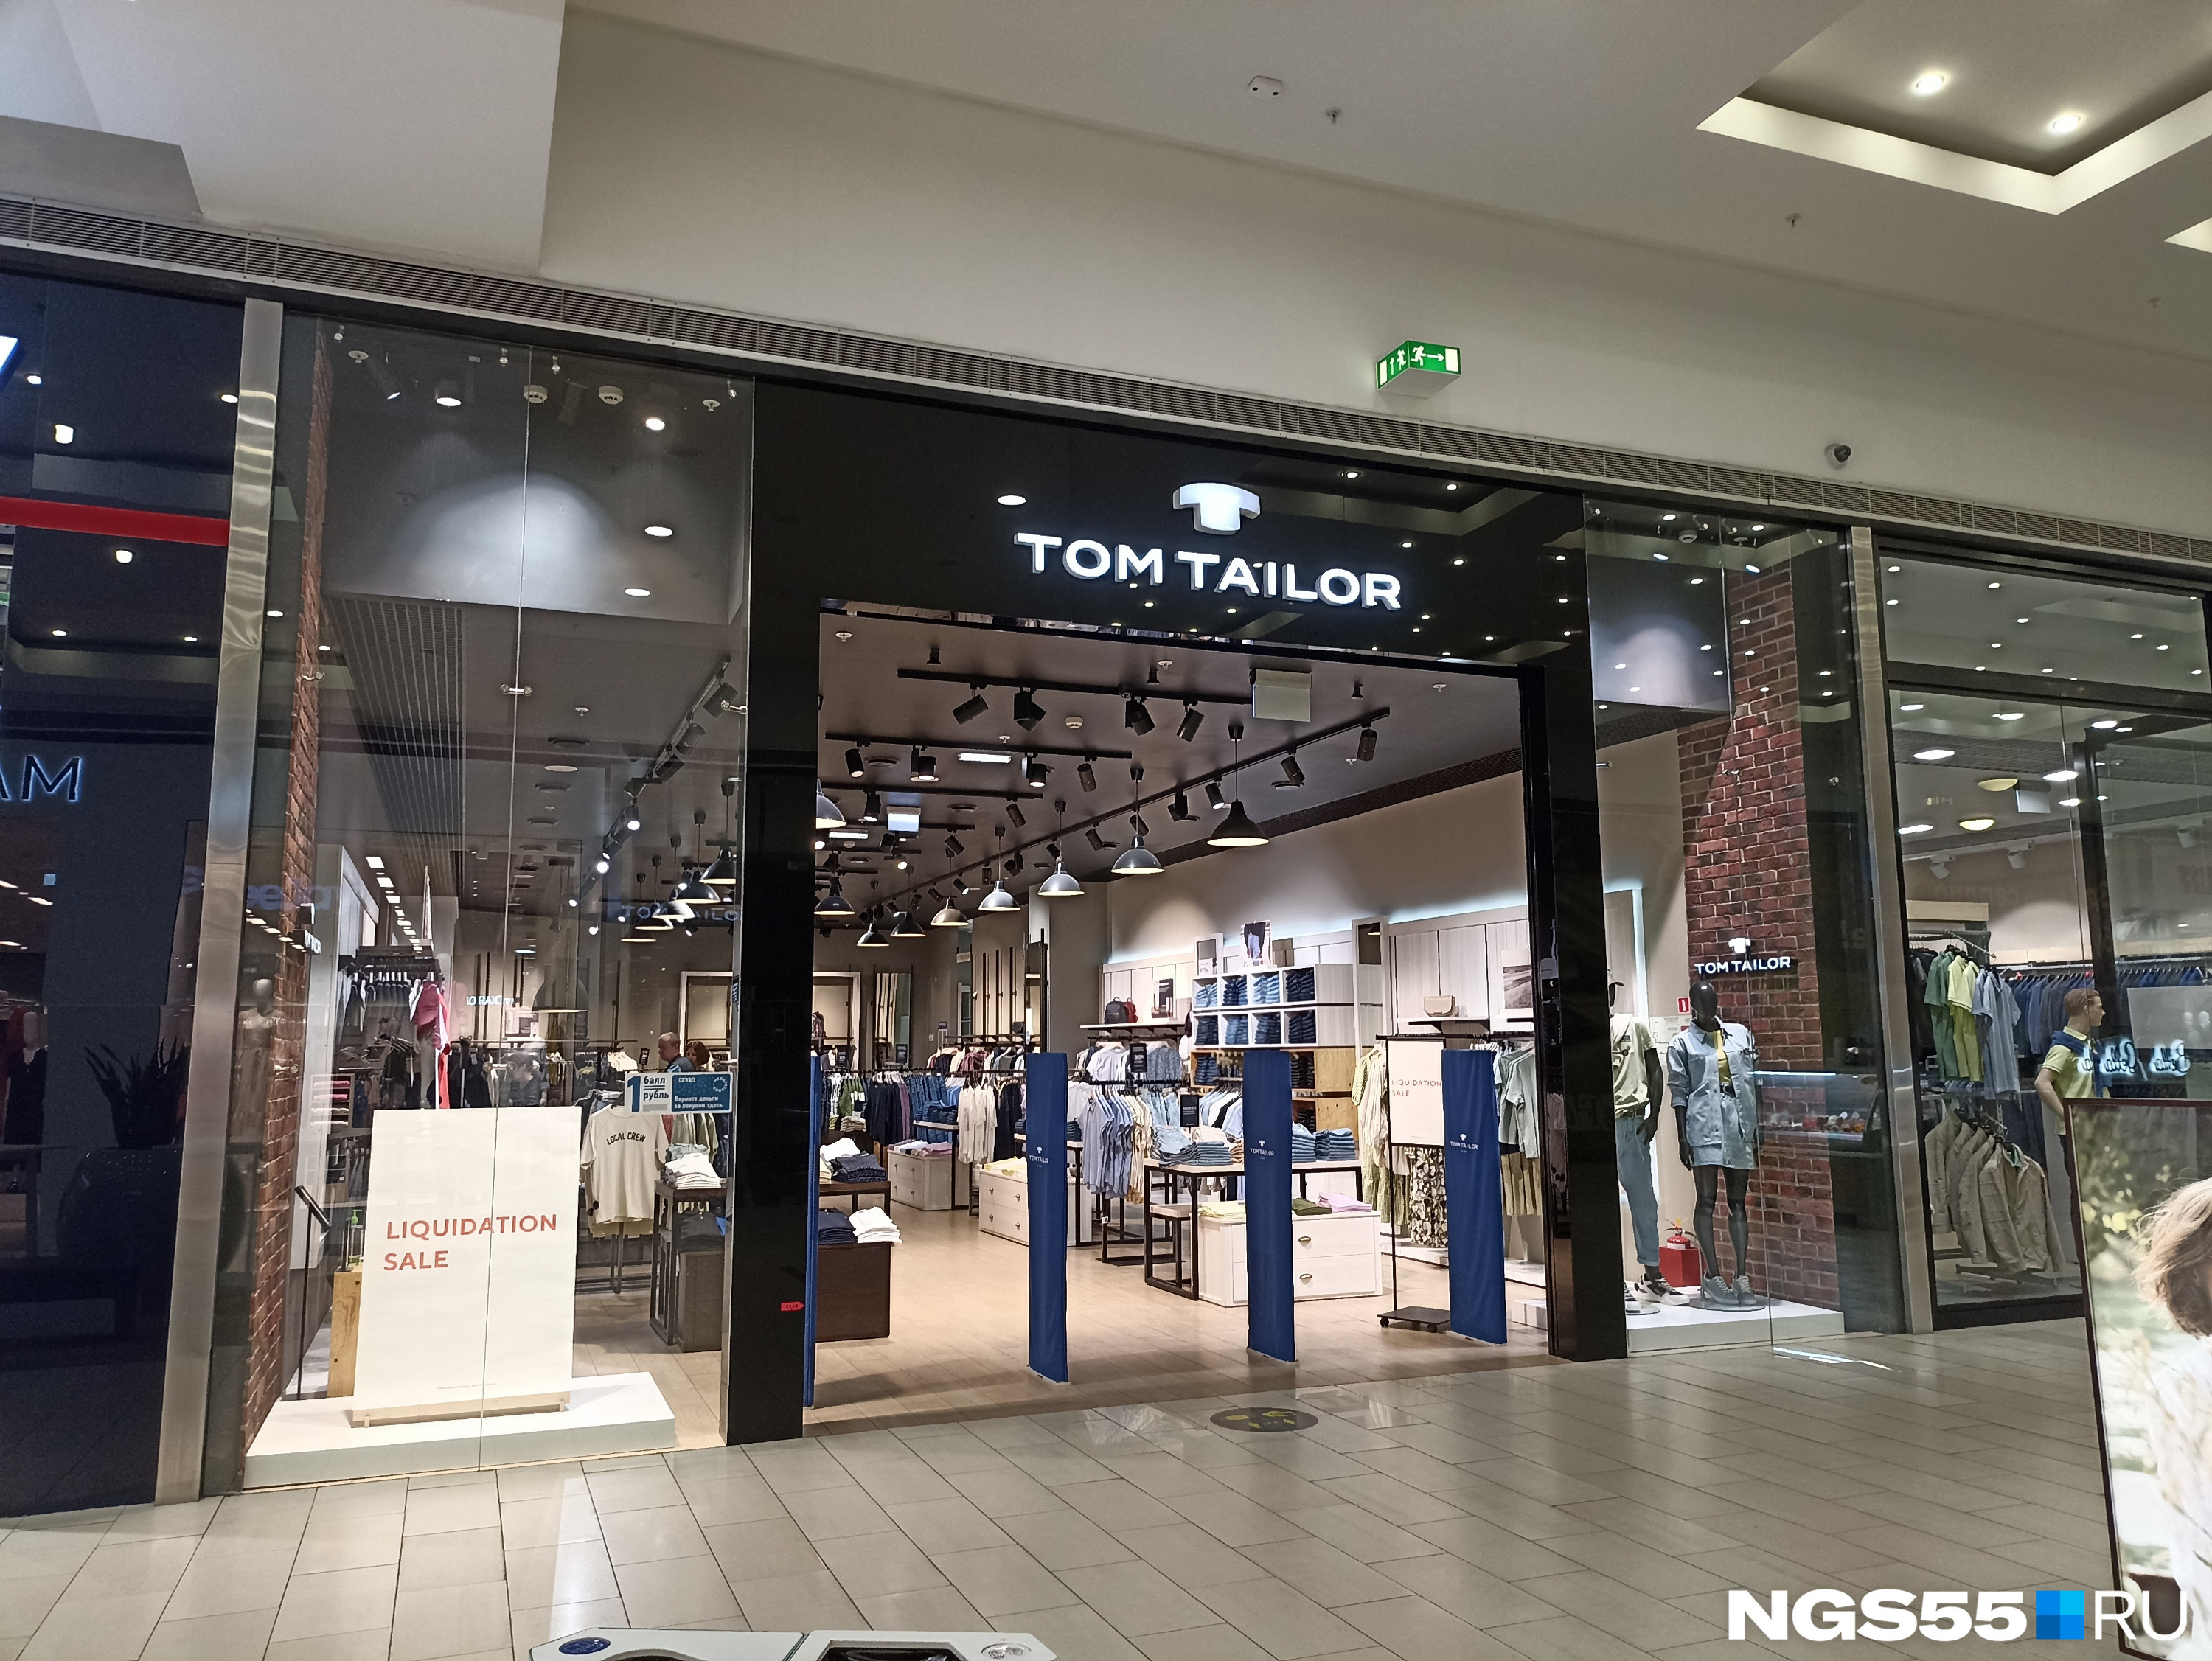 Tom Tailor закрылся два с лишним месяца назад, с 21 марта